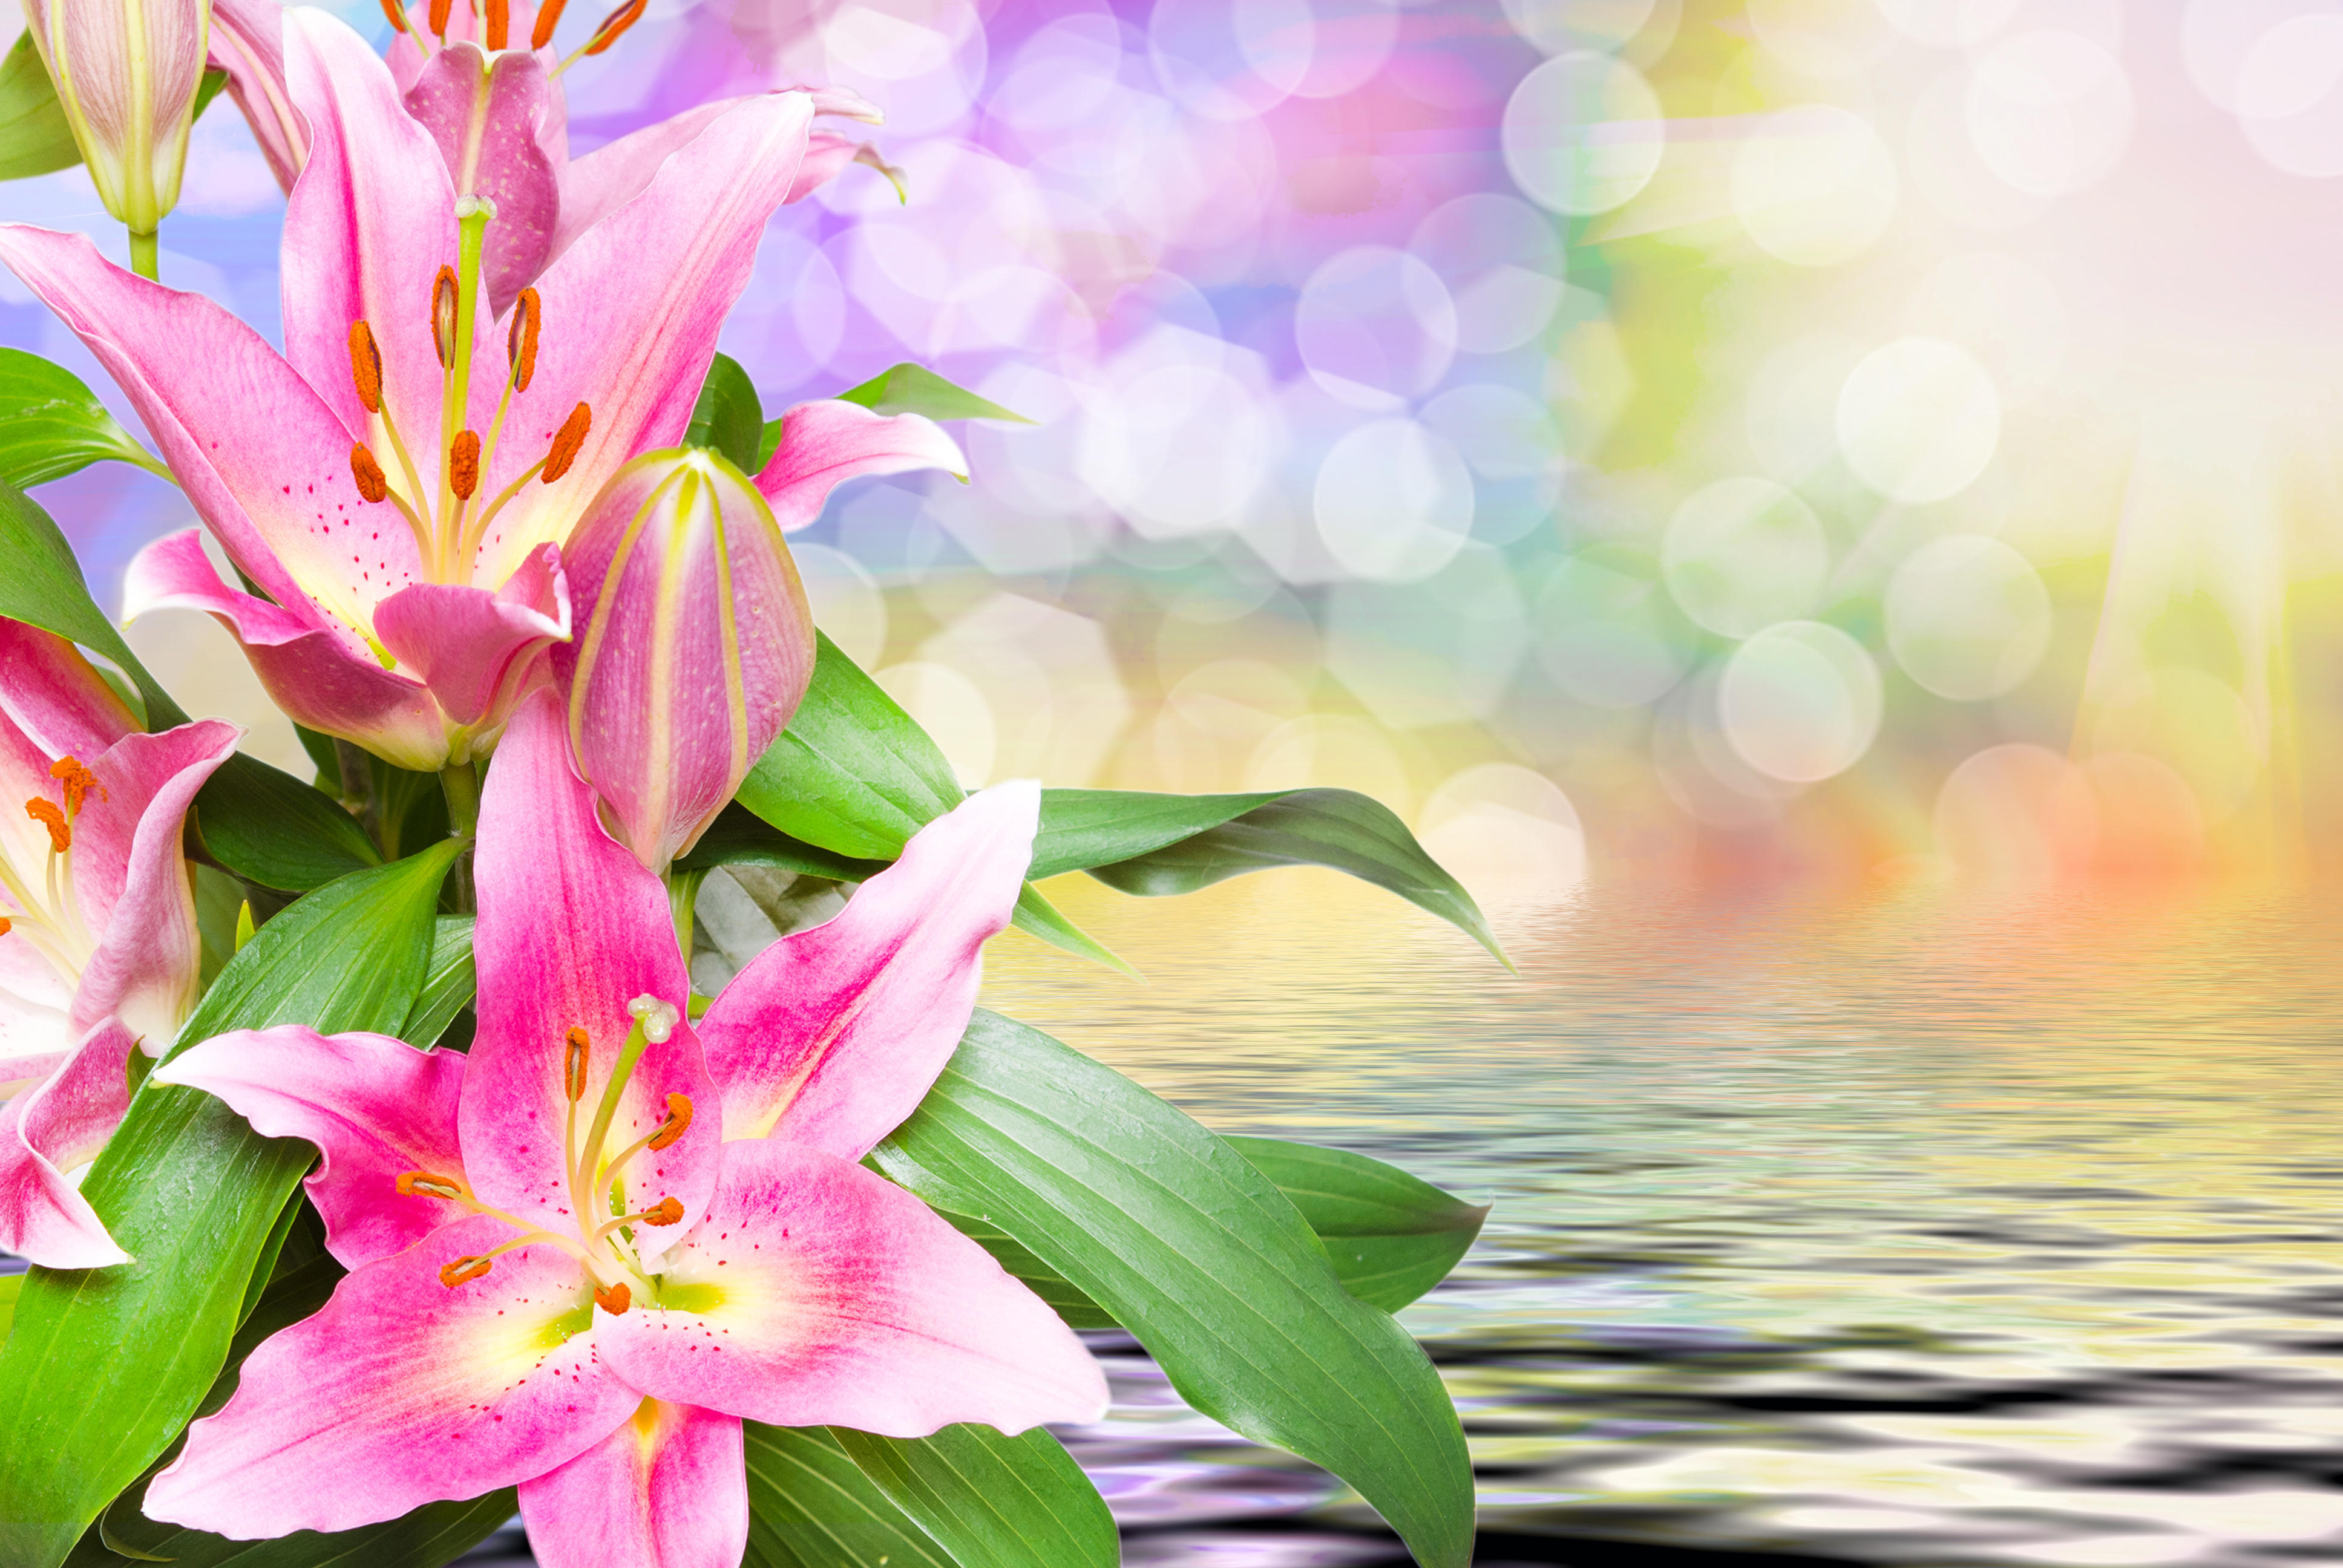 Фото цветы крупным планом лилия красивый фон - бесплатные картинки на Fonwall